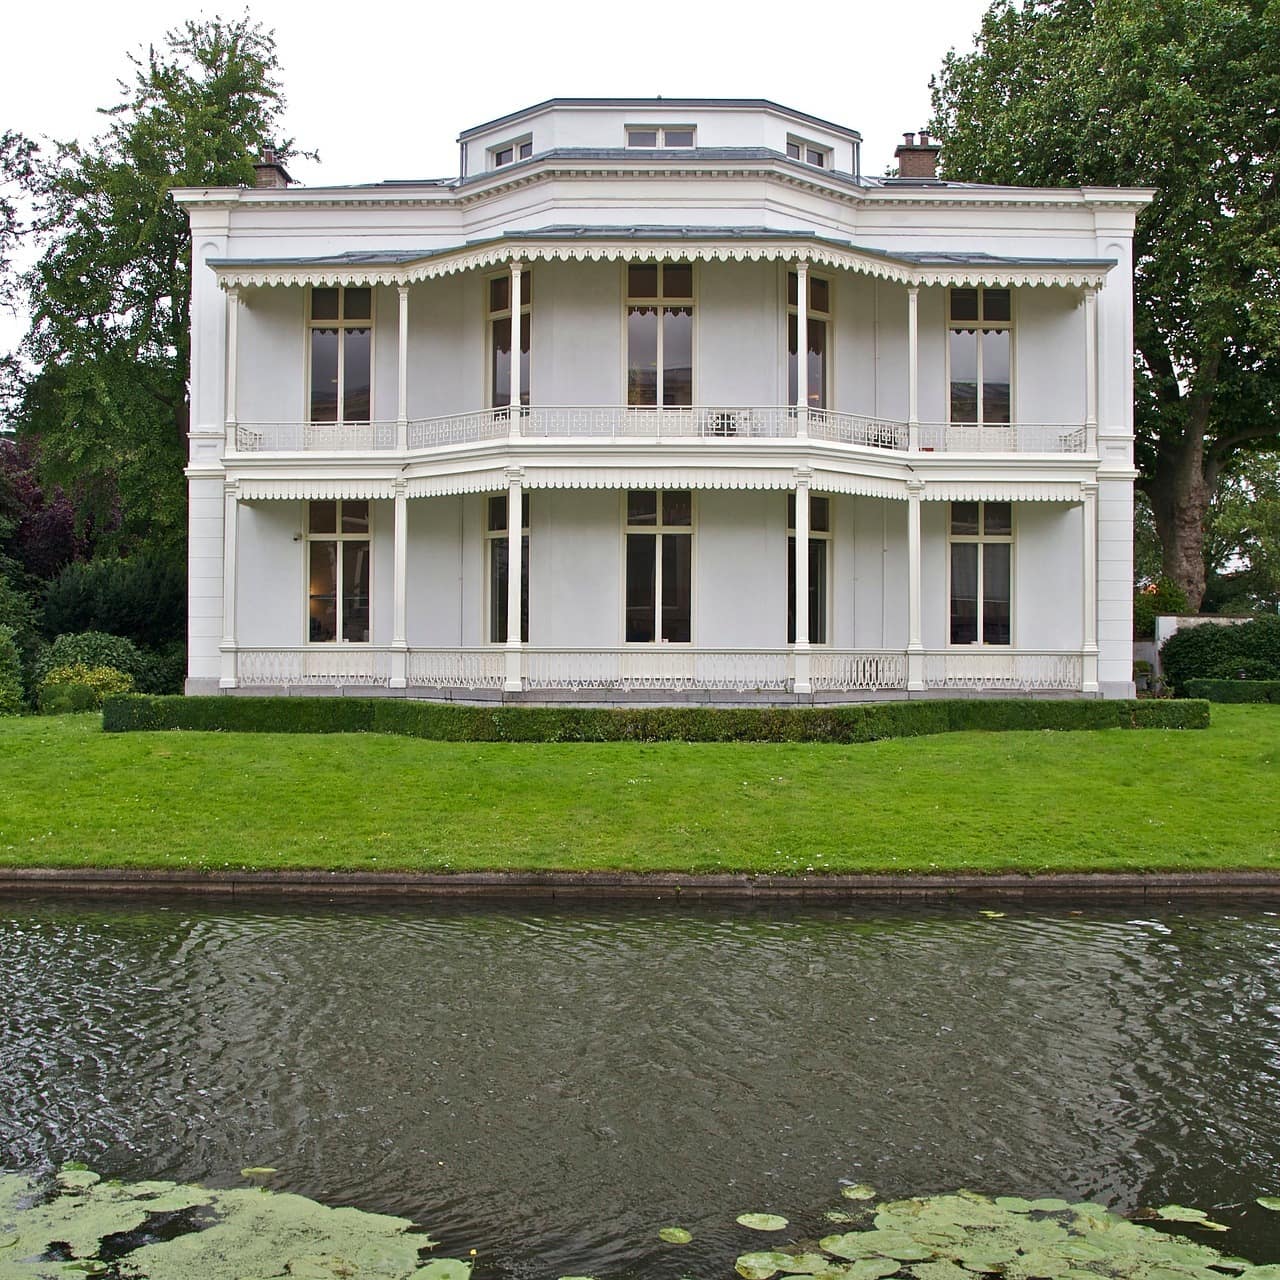 Luxuriös anmutendes, weißes zweistöckiges Haus in Holland mit Garten direkt am Wasser